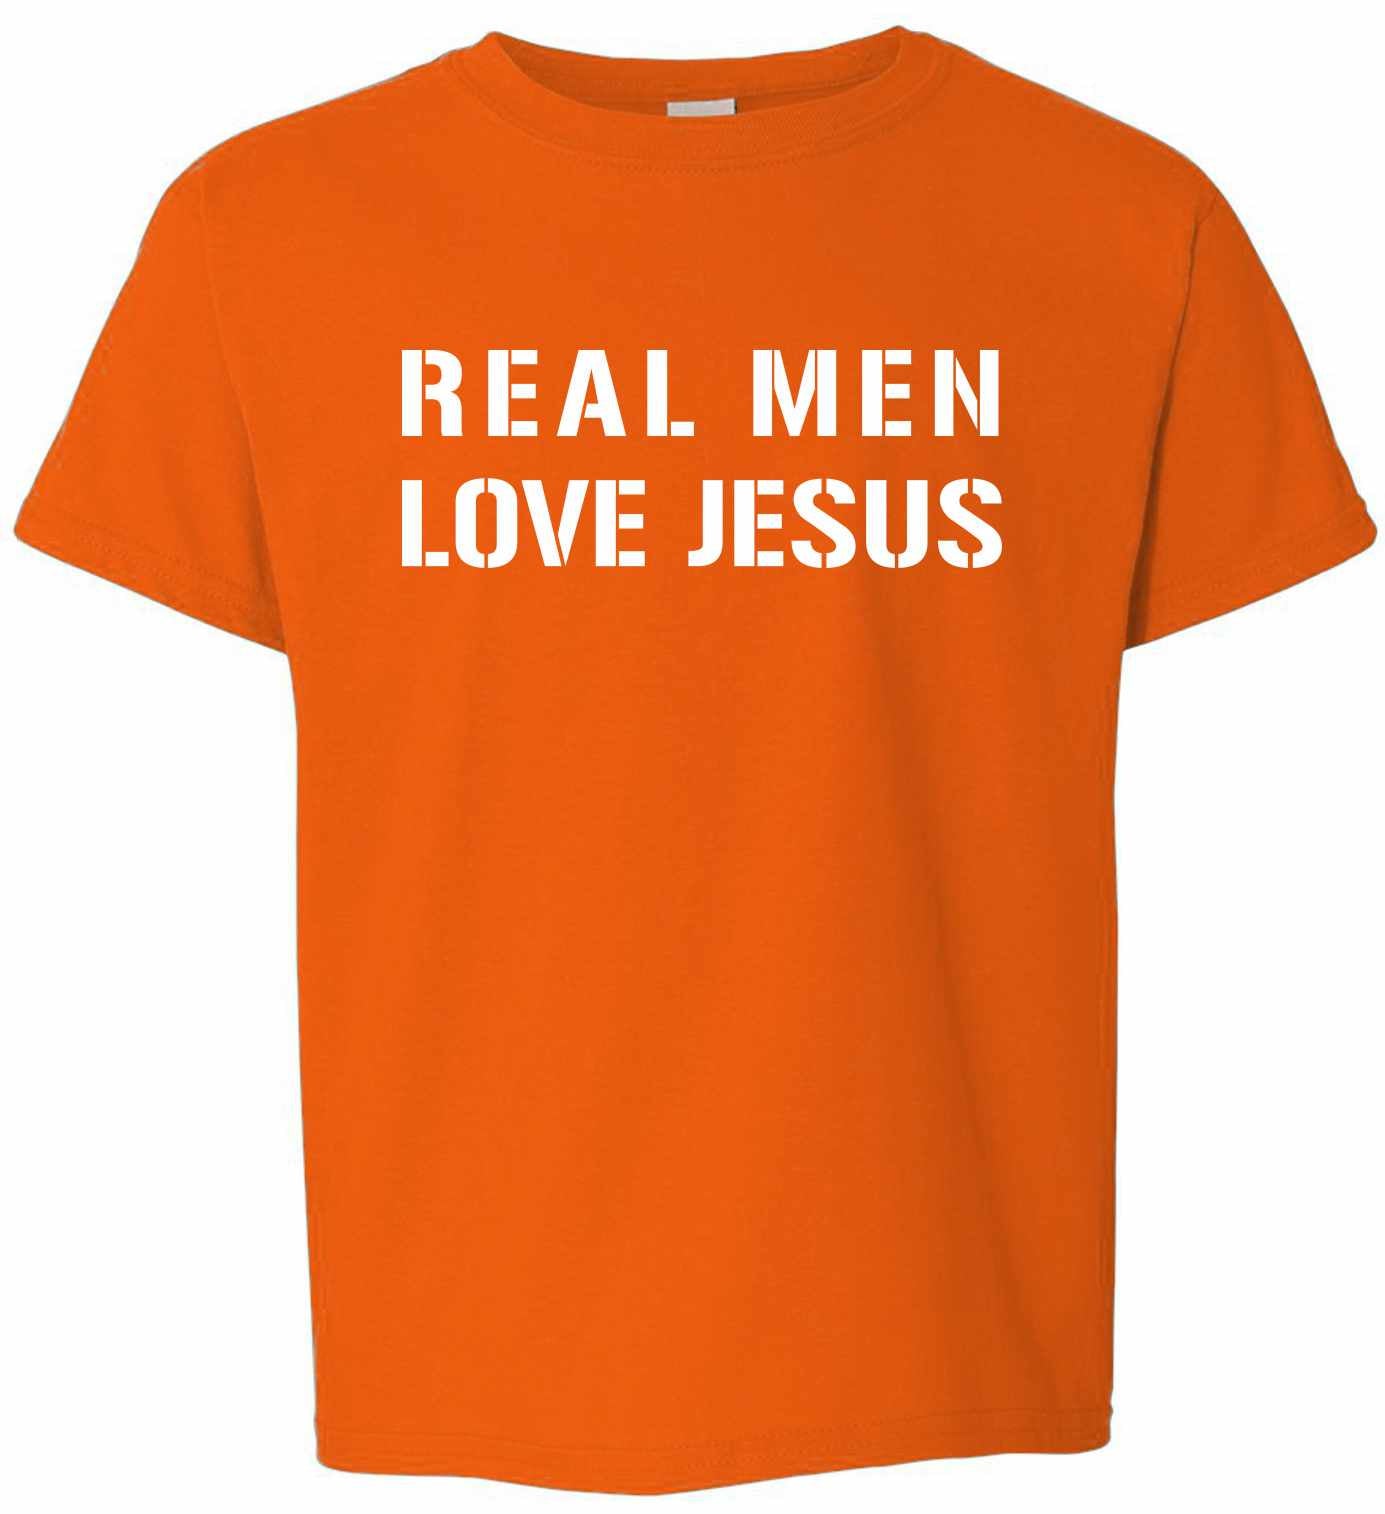 REAL MEN LOVE JESUS on Kids T-Shirt (#393-201)